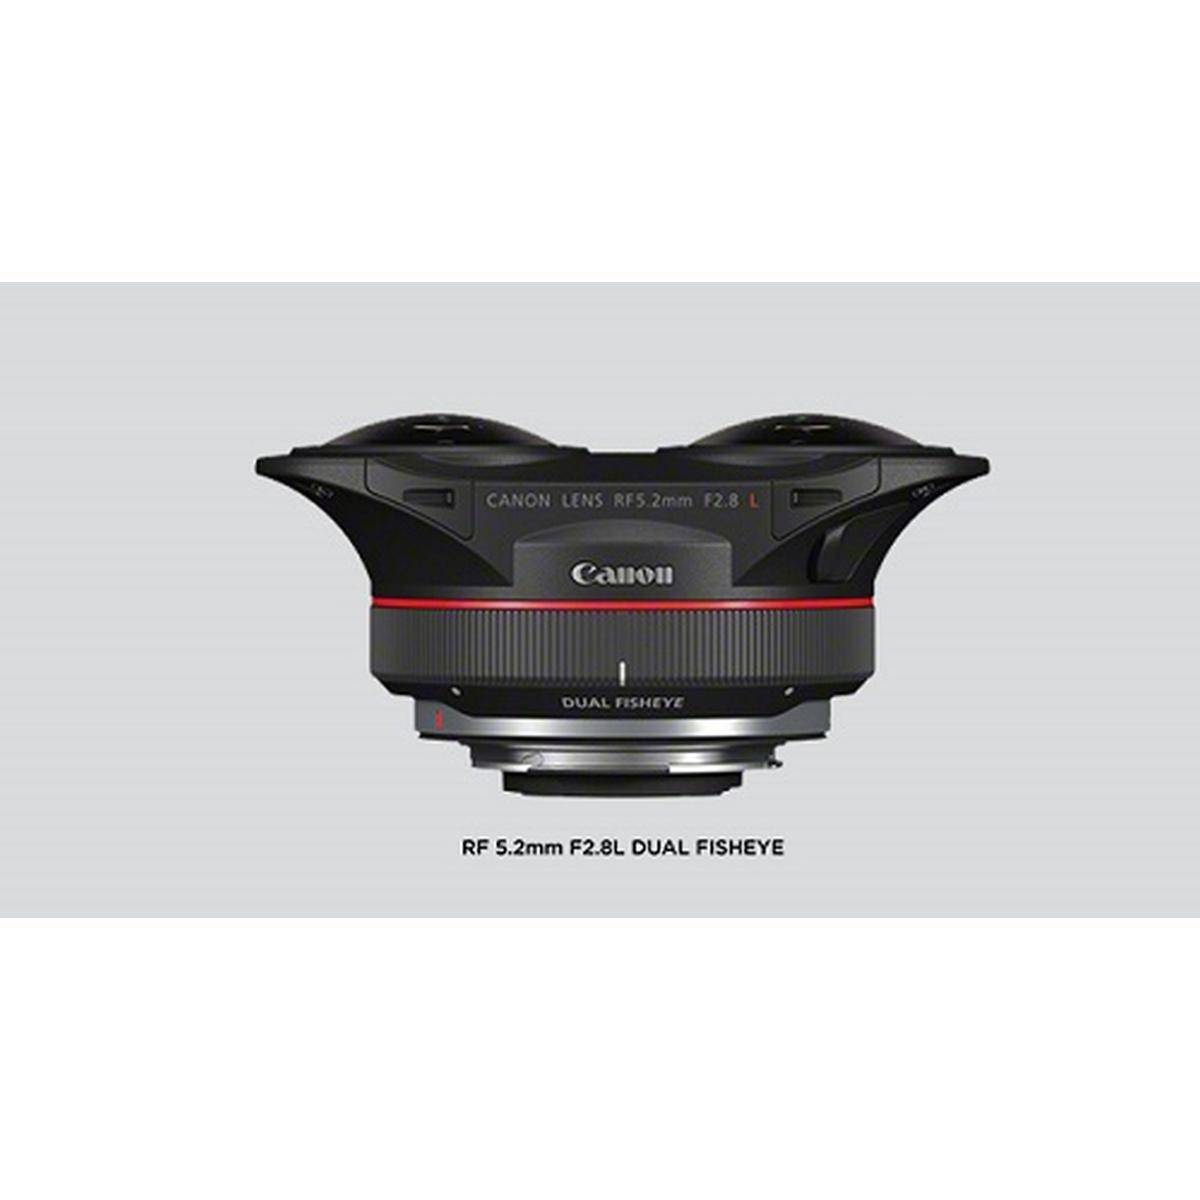 Canon Rf 5.2mm F 2.8 L Dual Fisheye - Obiettivo Full Frame - Garanzia Canon Italia